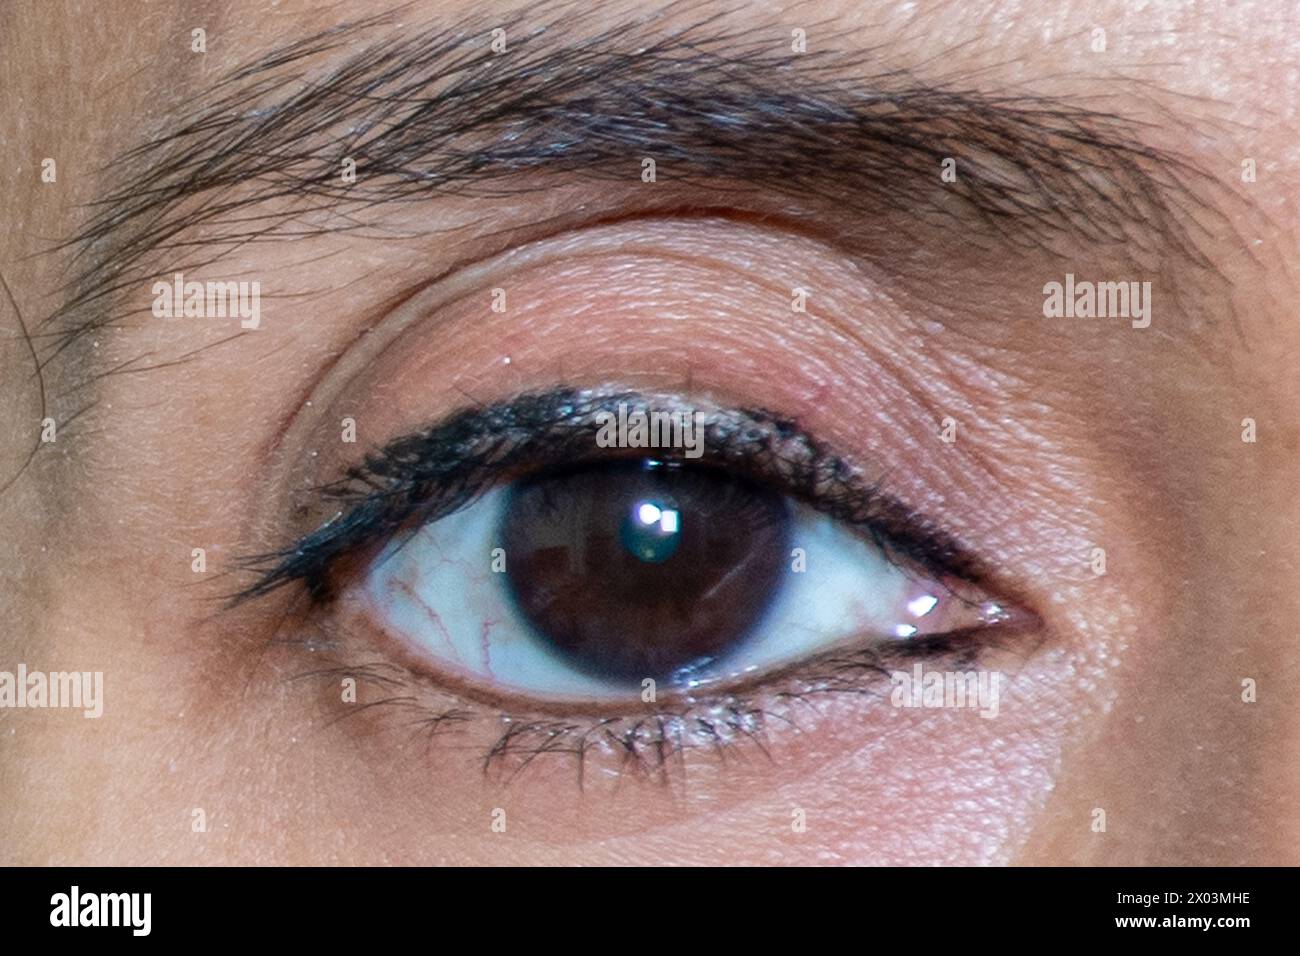 Primo piano Ritratto dell'occhio destro di una bella donna, che guarda dritto con la pupilla nera e il sopracciglio definito Foto Stock